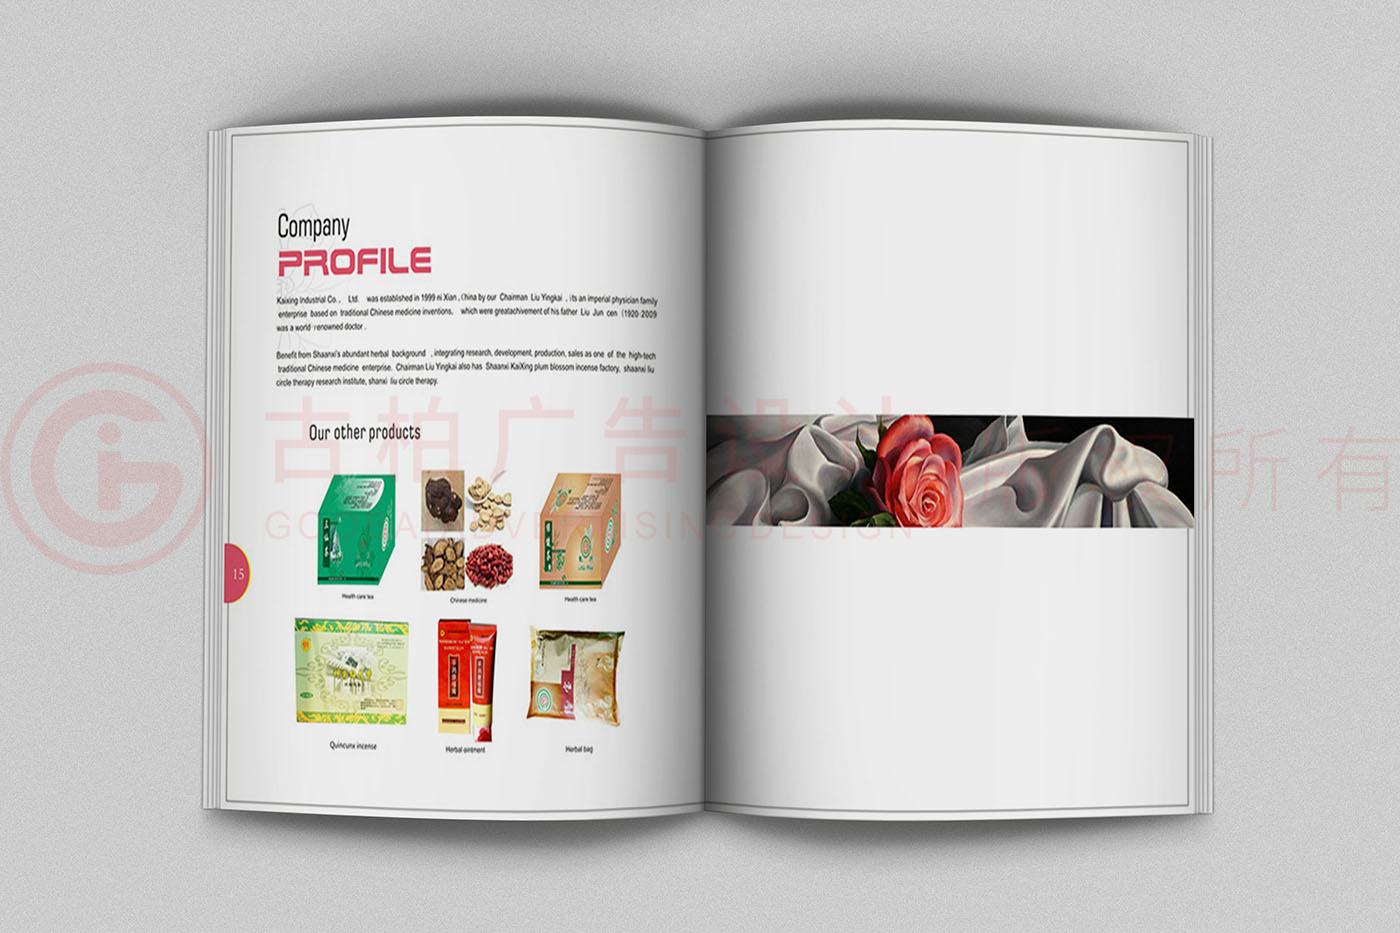 保养品产品宣传手册设计,保健产品宣传手册设计公司